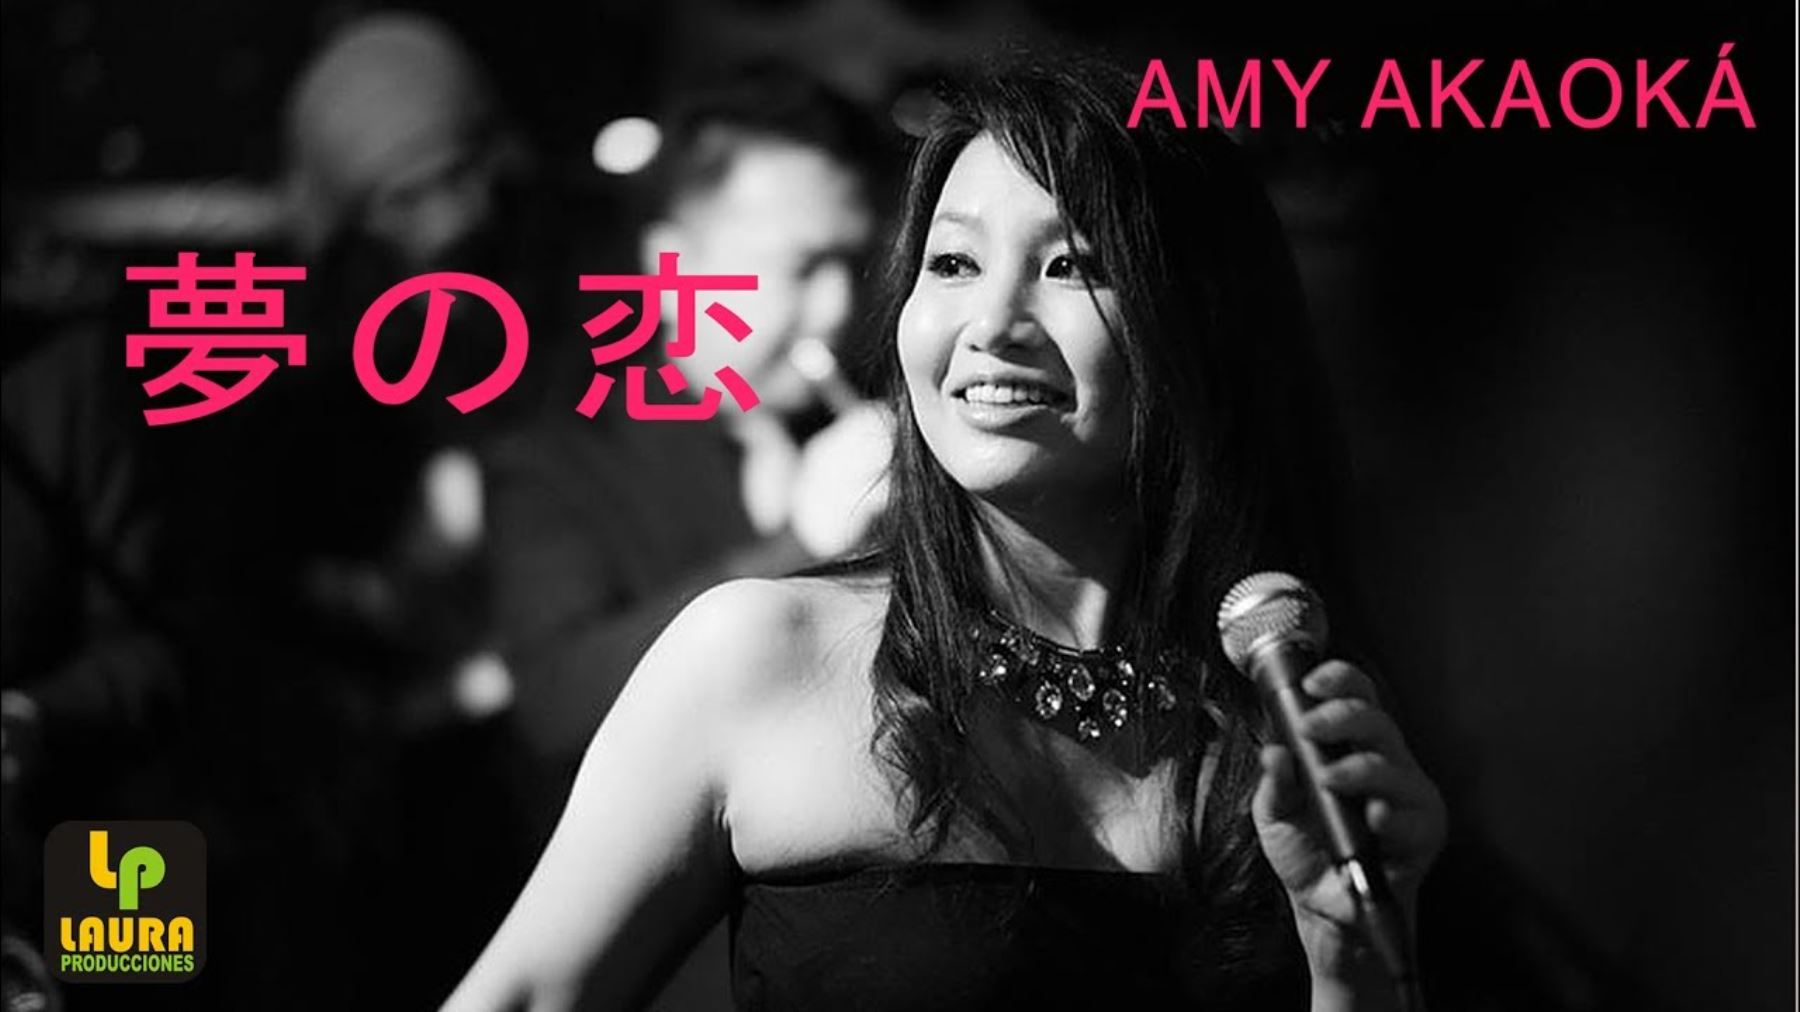 Amy Akaoka conmueve con su voz en este tributo a la cumbia peruana.